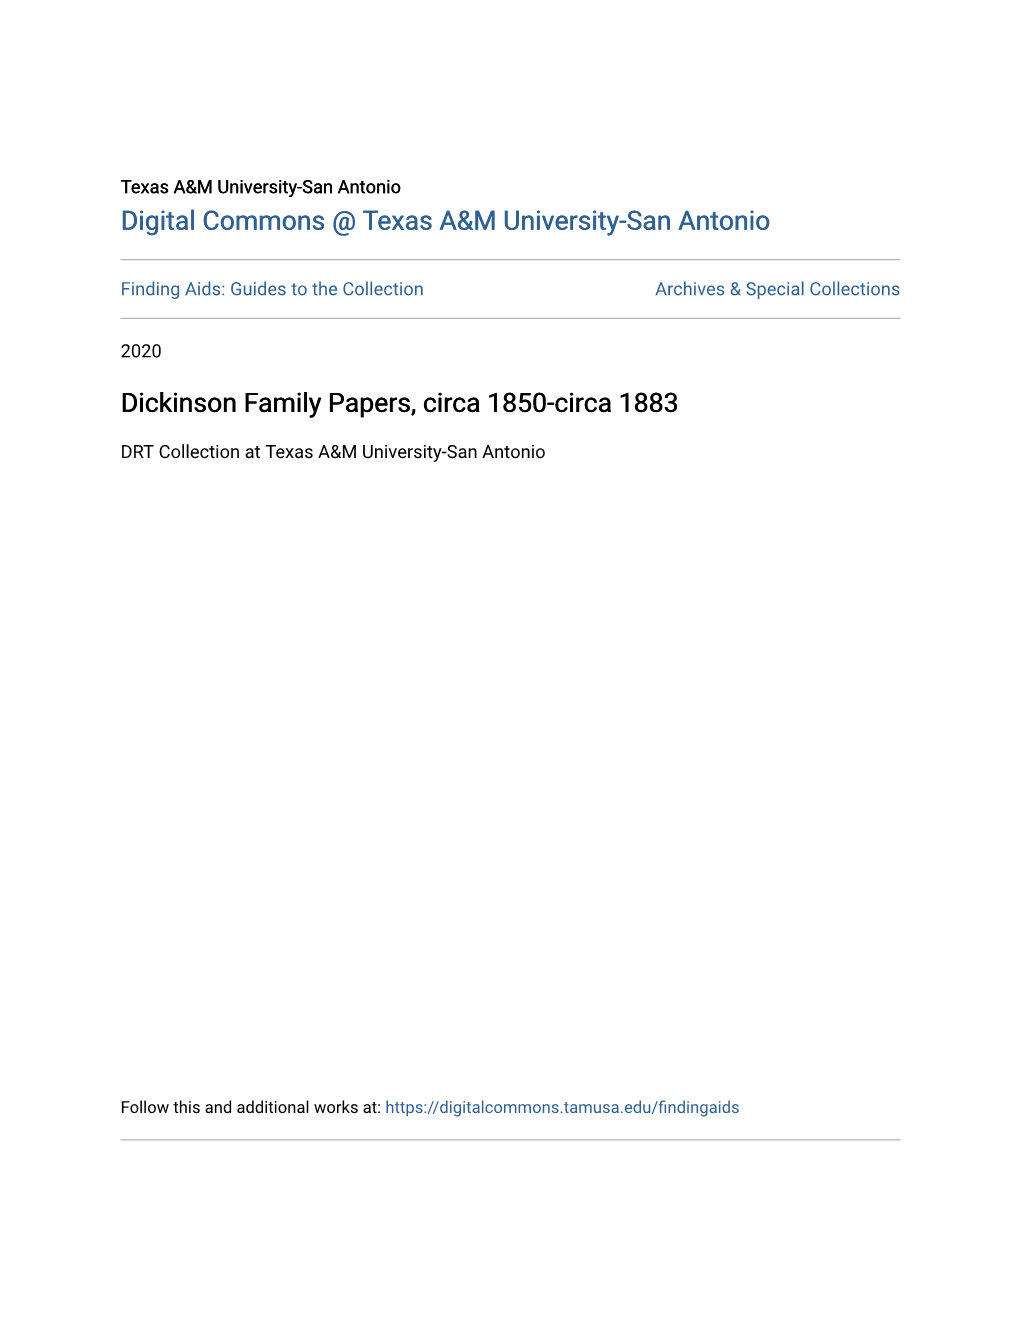 Dickinson Family Papers, Circa 1850-Circa 1883